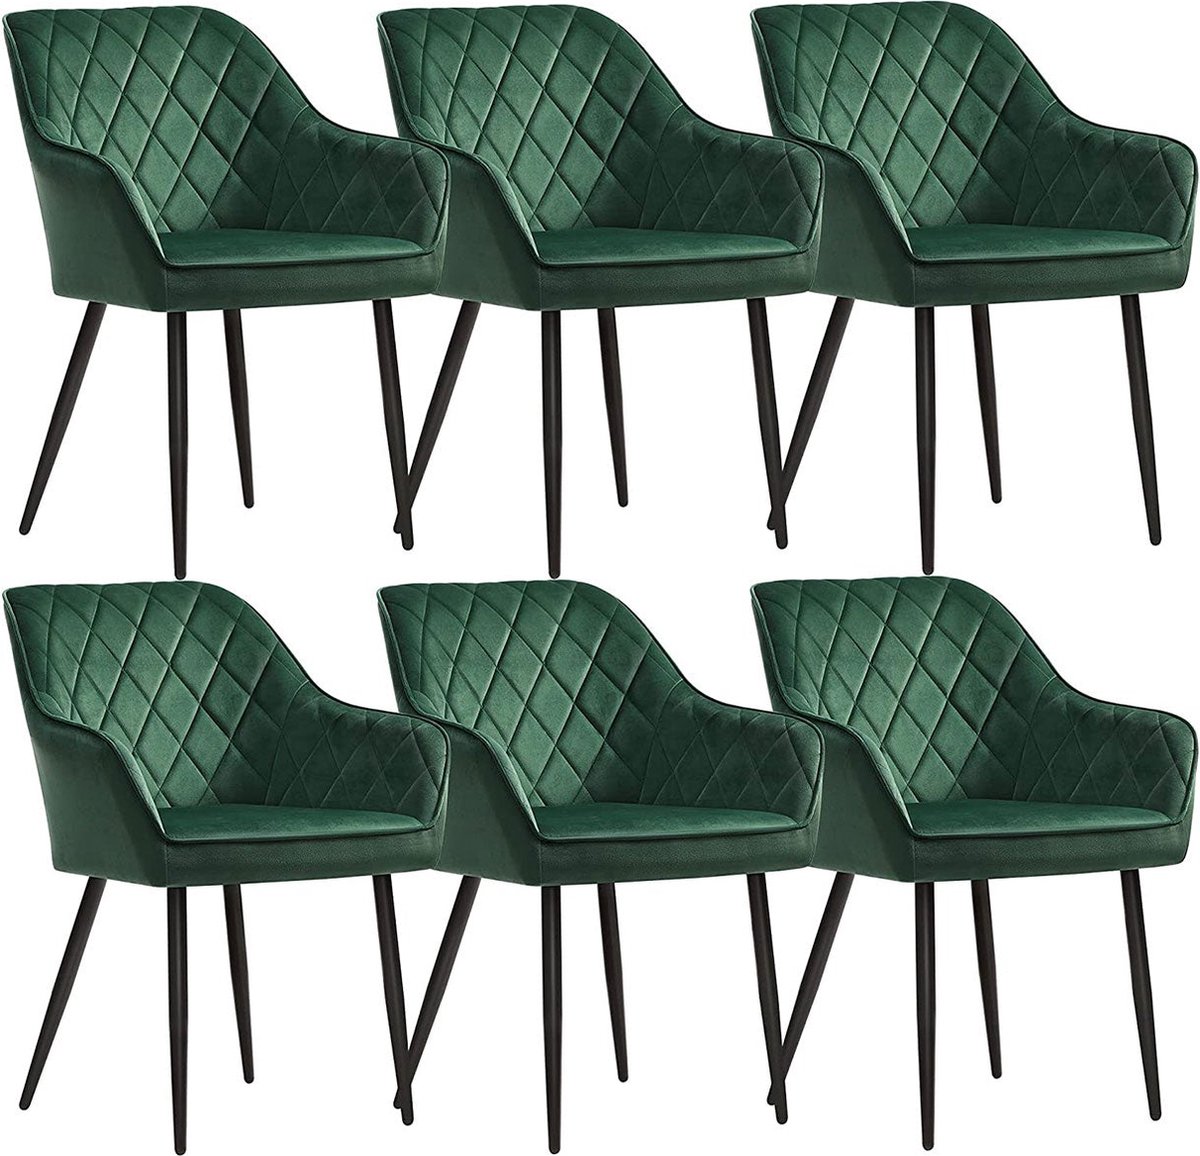 Eetkamerstoelen - Fauteuil - Gestoffeerde stoelen - Set van 6 - Met armleuningen - Metalen poten - Fluwelen bekleding - Groen